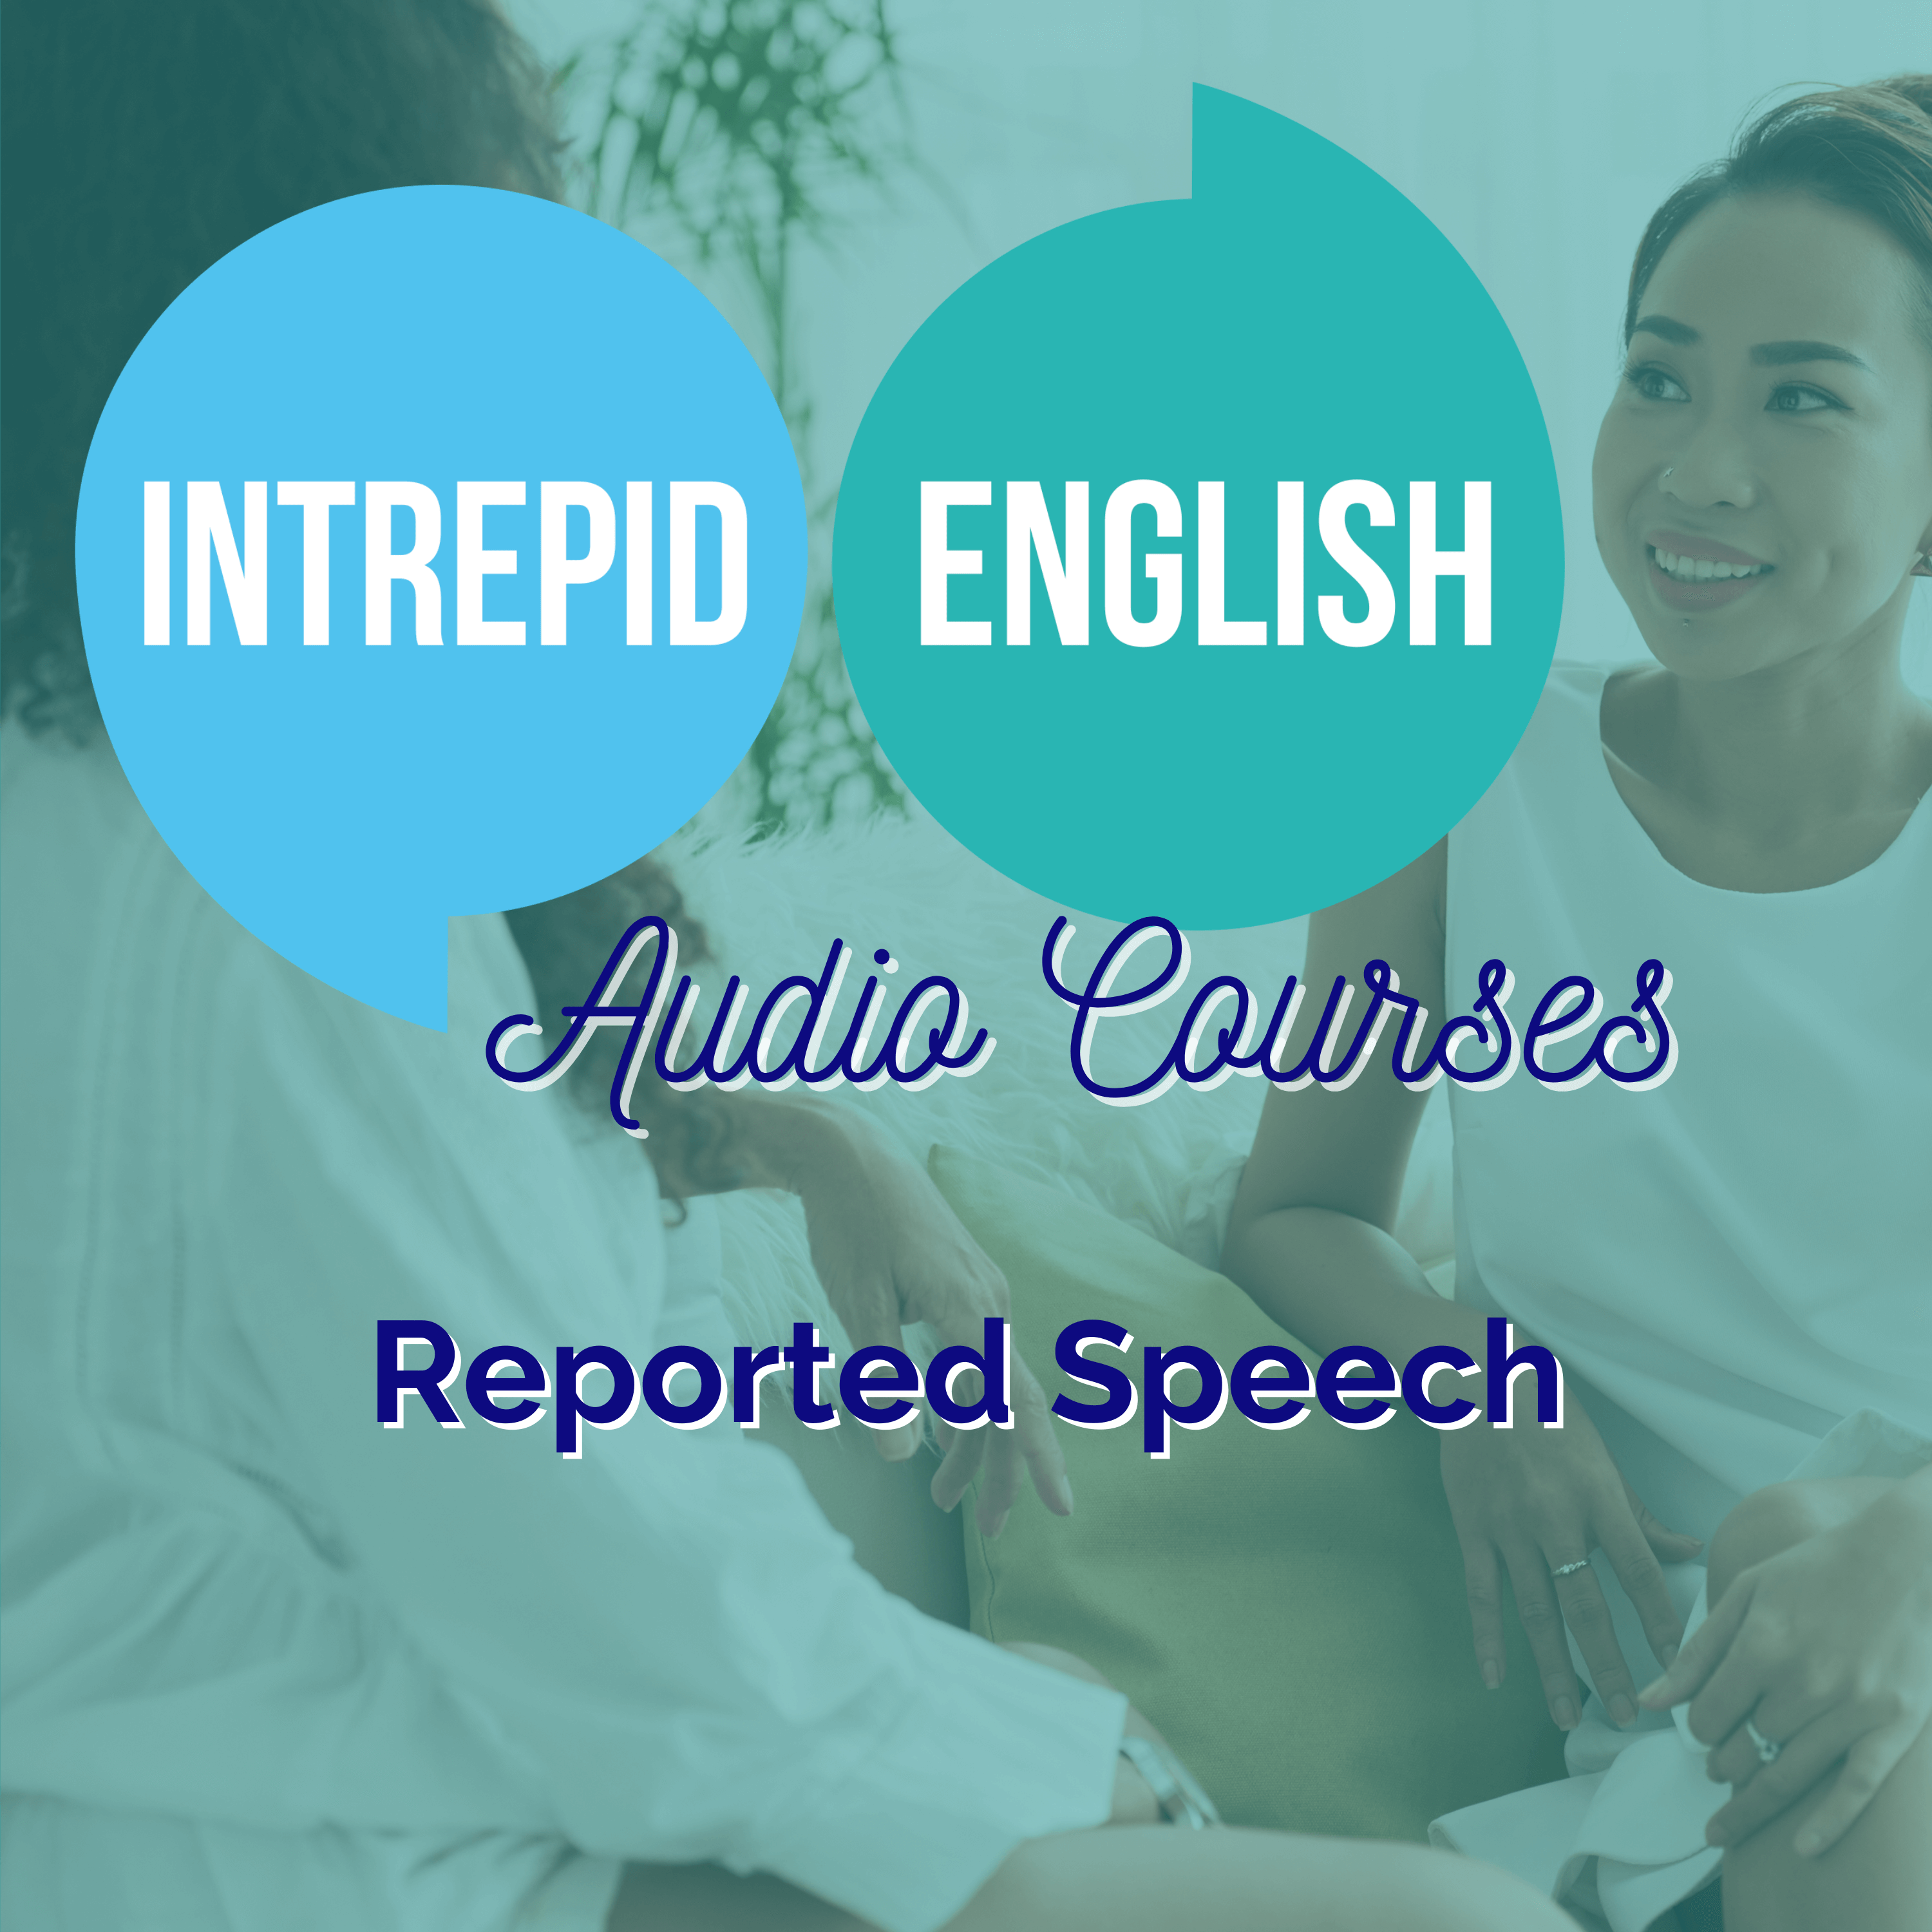 Audio Courses reported speech